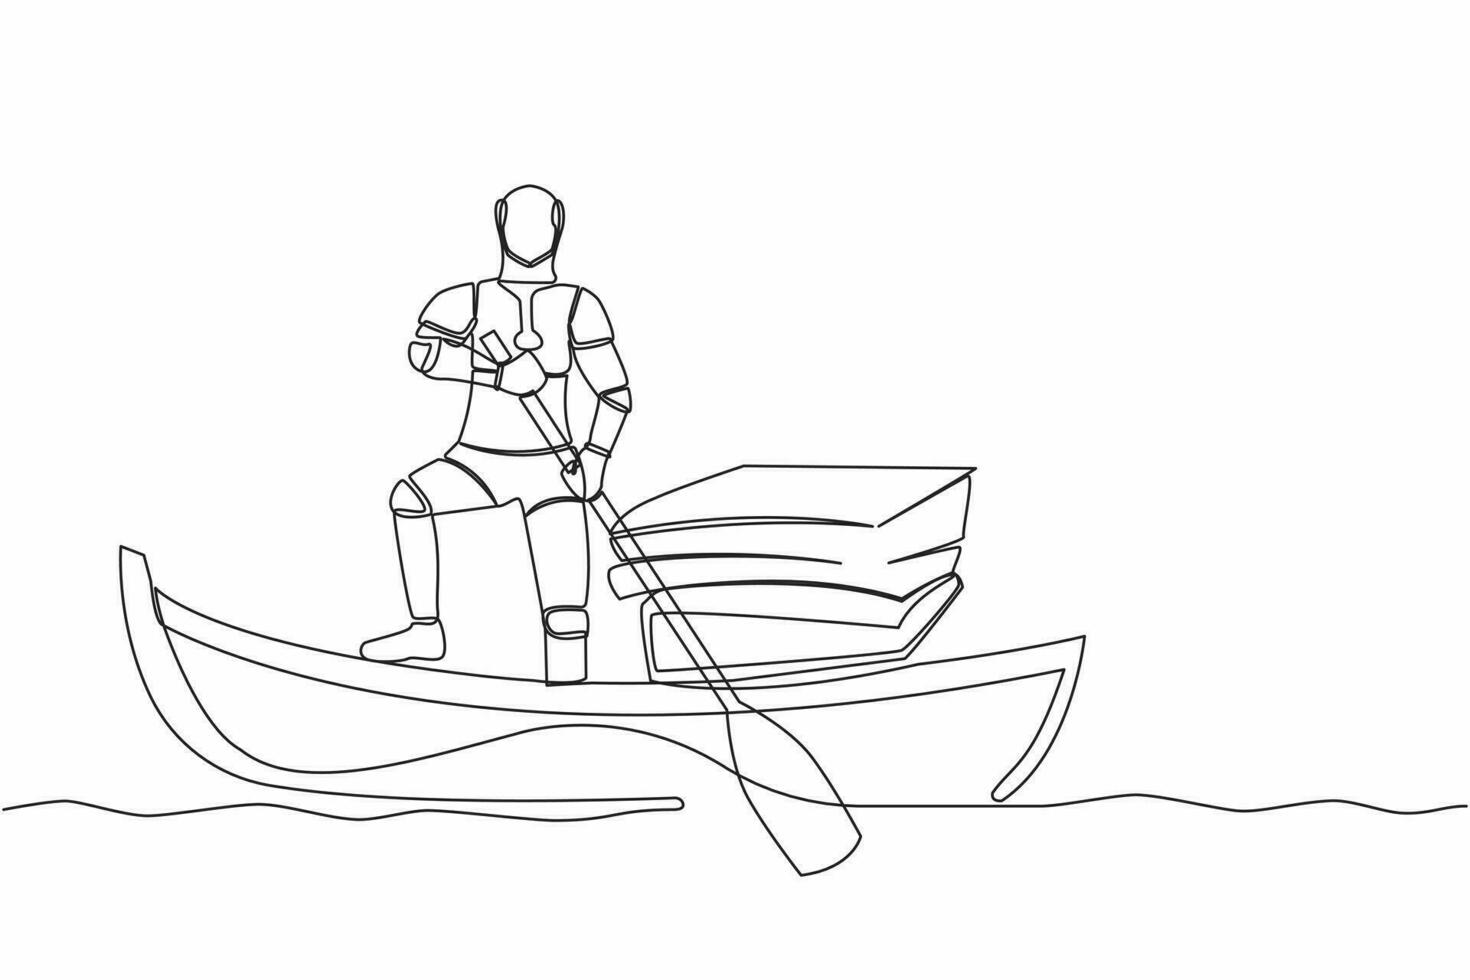 Single kontinuierlich Linie Zeichnung Roboter Segeln Weg auf Boot mit Stapel von Papiere. verwalten Digital dokumentieren im Technik Unternehmen. Zukunft Technologie Entwicklung. einer Linie zeichnen Grafik Design Vektor Illustration